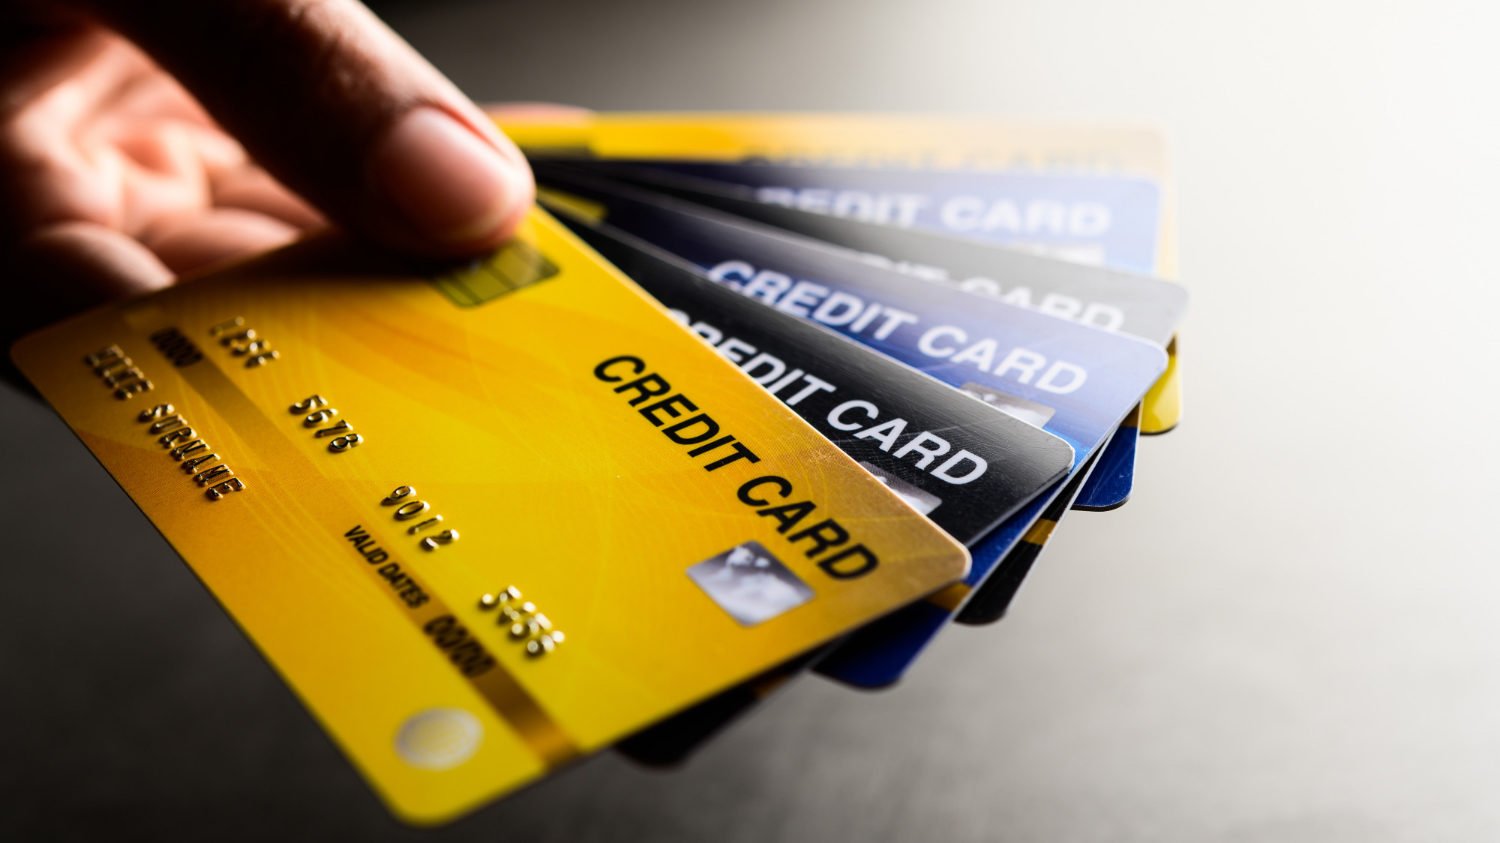 ¿Los burós de crédito te dan o te niegan crédito? La verdad detrás del mito